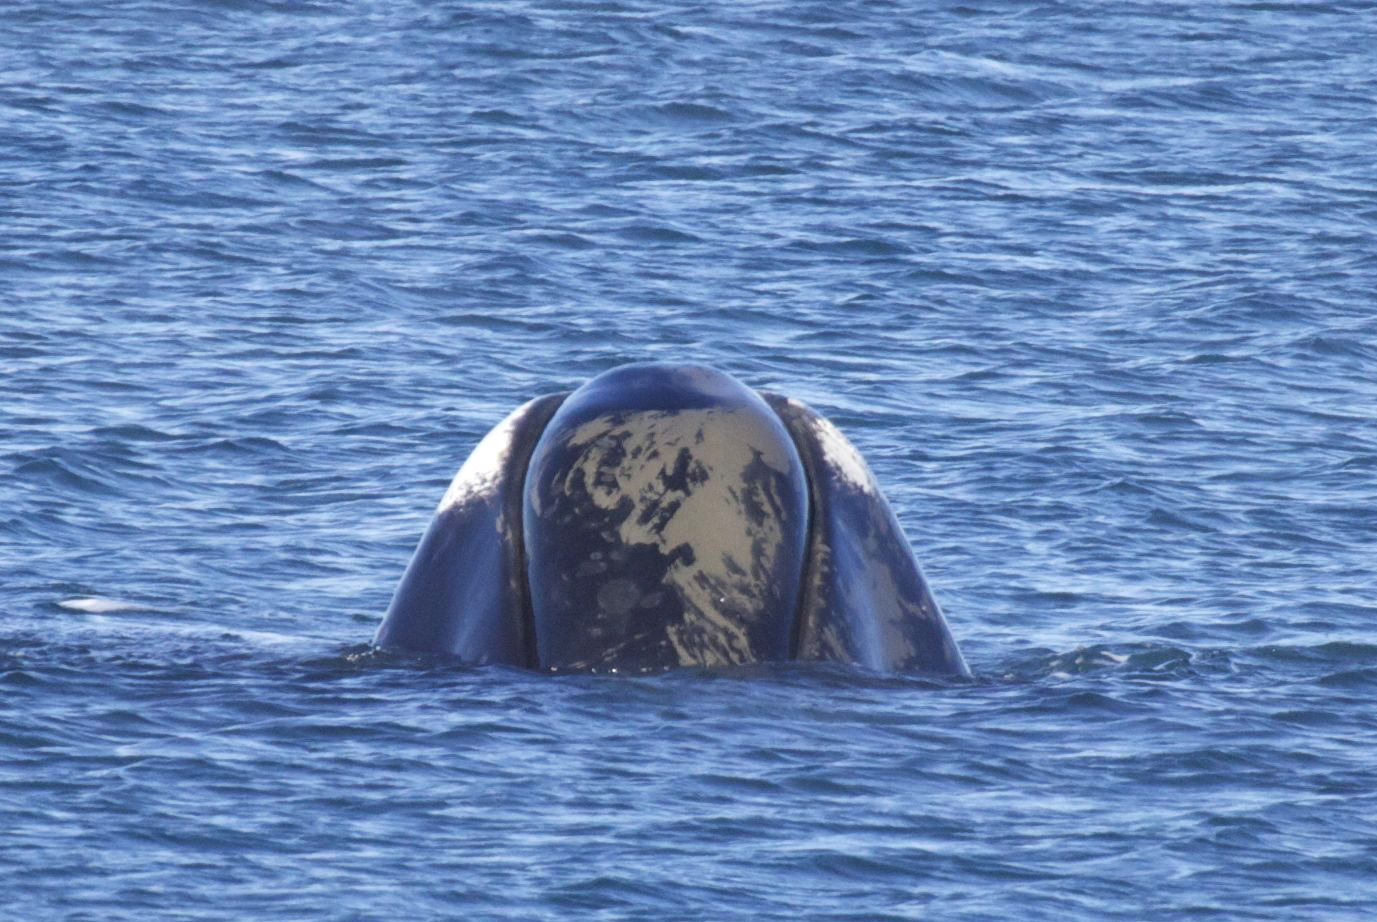 A bowhead whale surfaces.